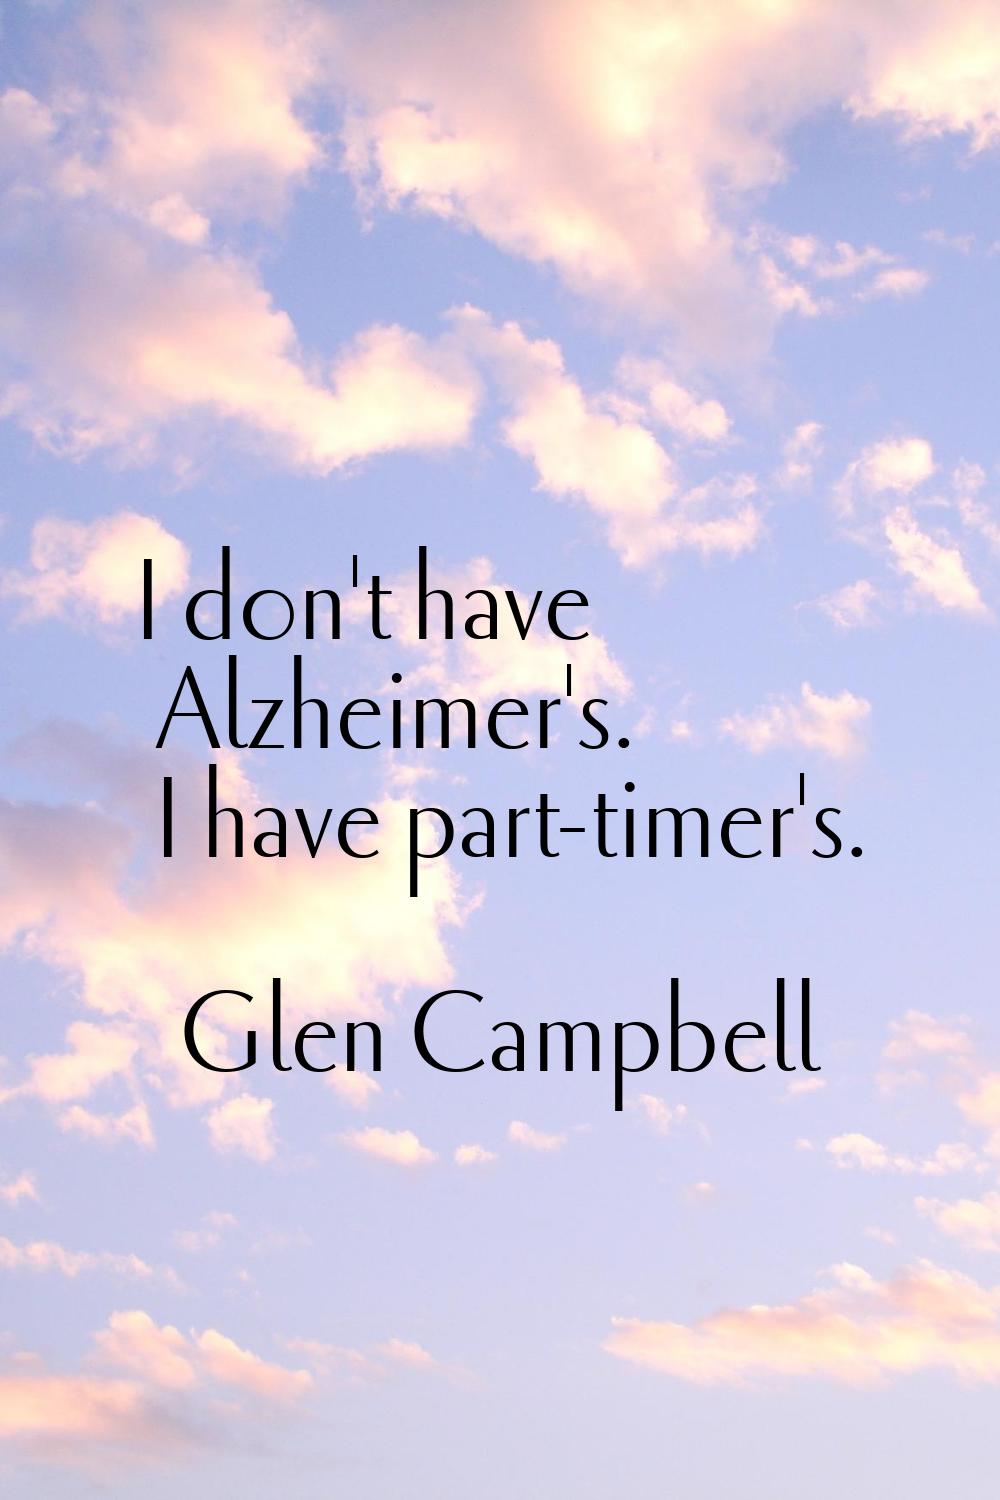 I don't have Alzheimer's. I have part-timer's.